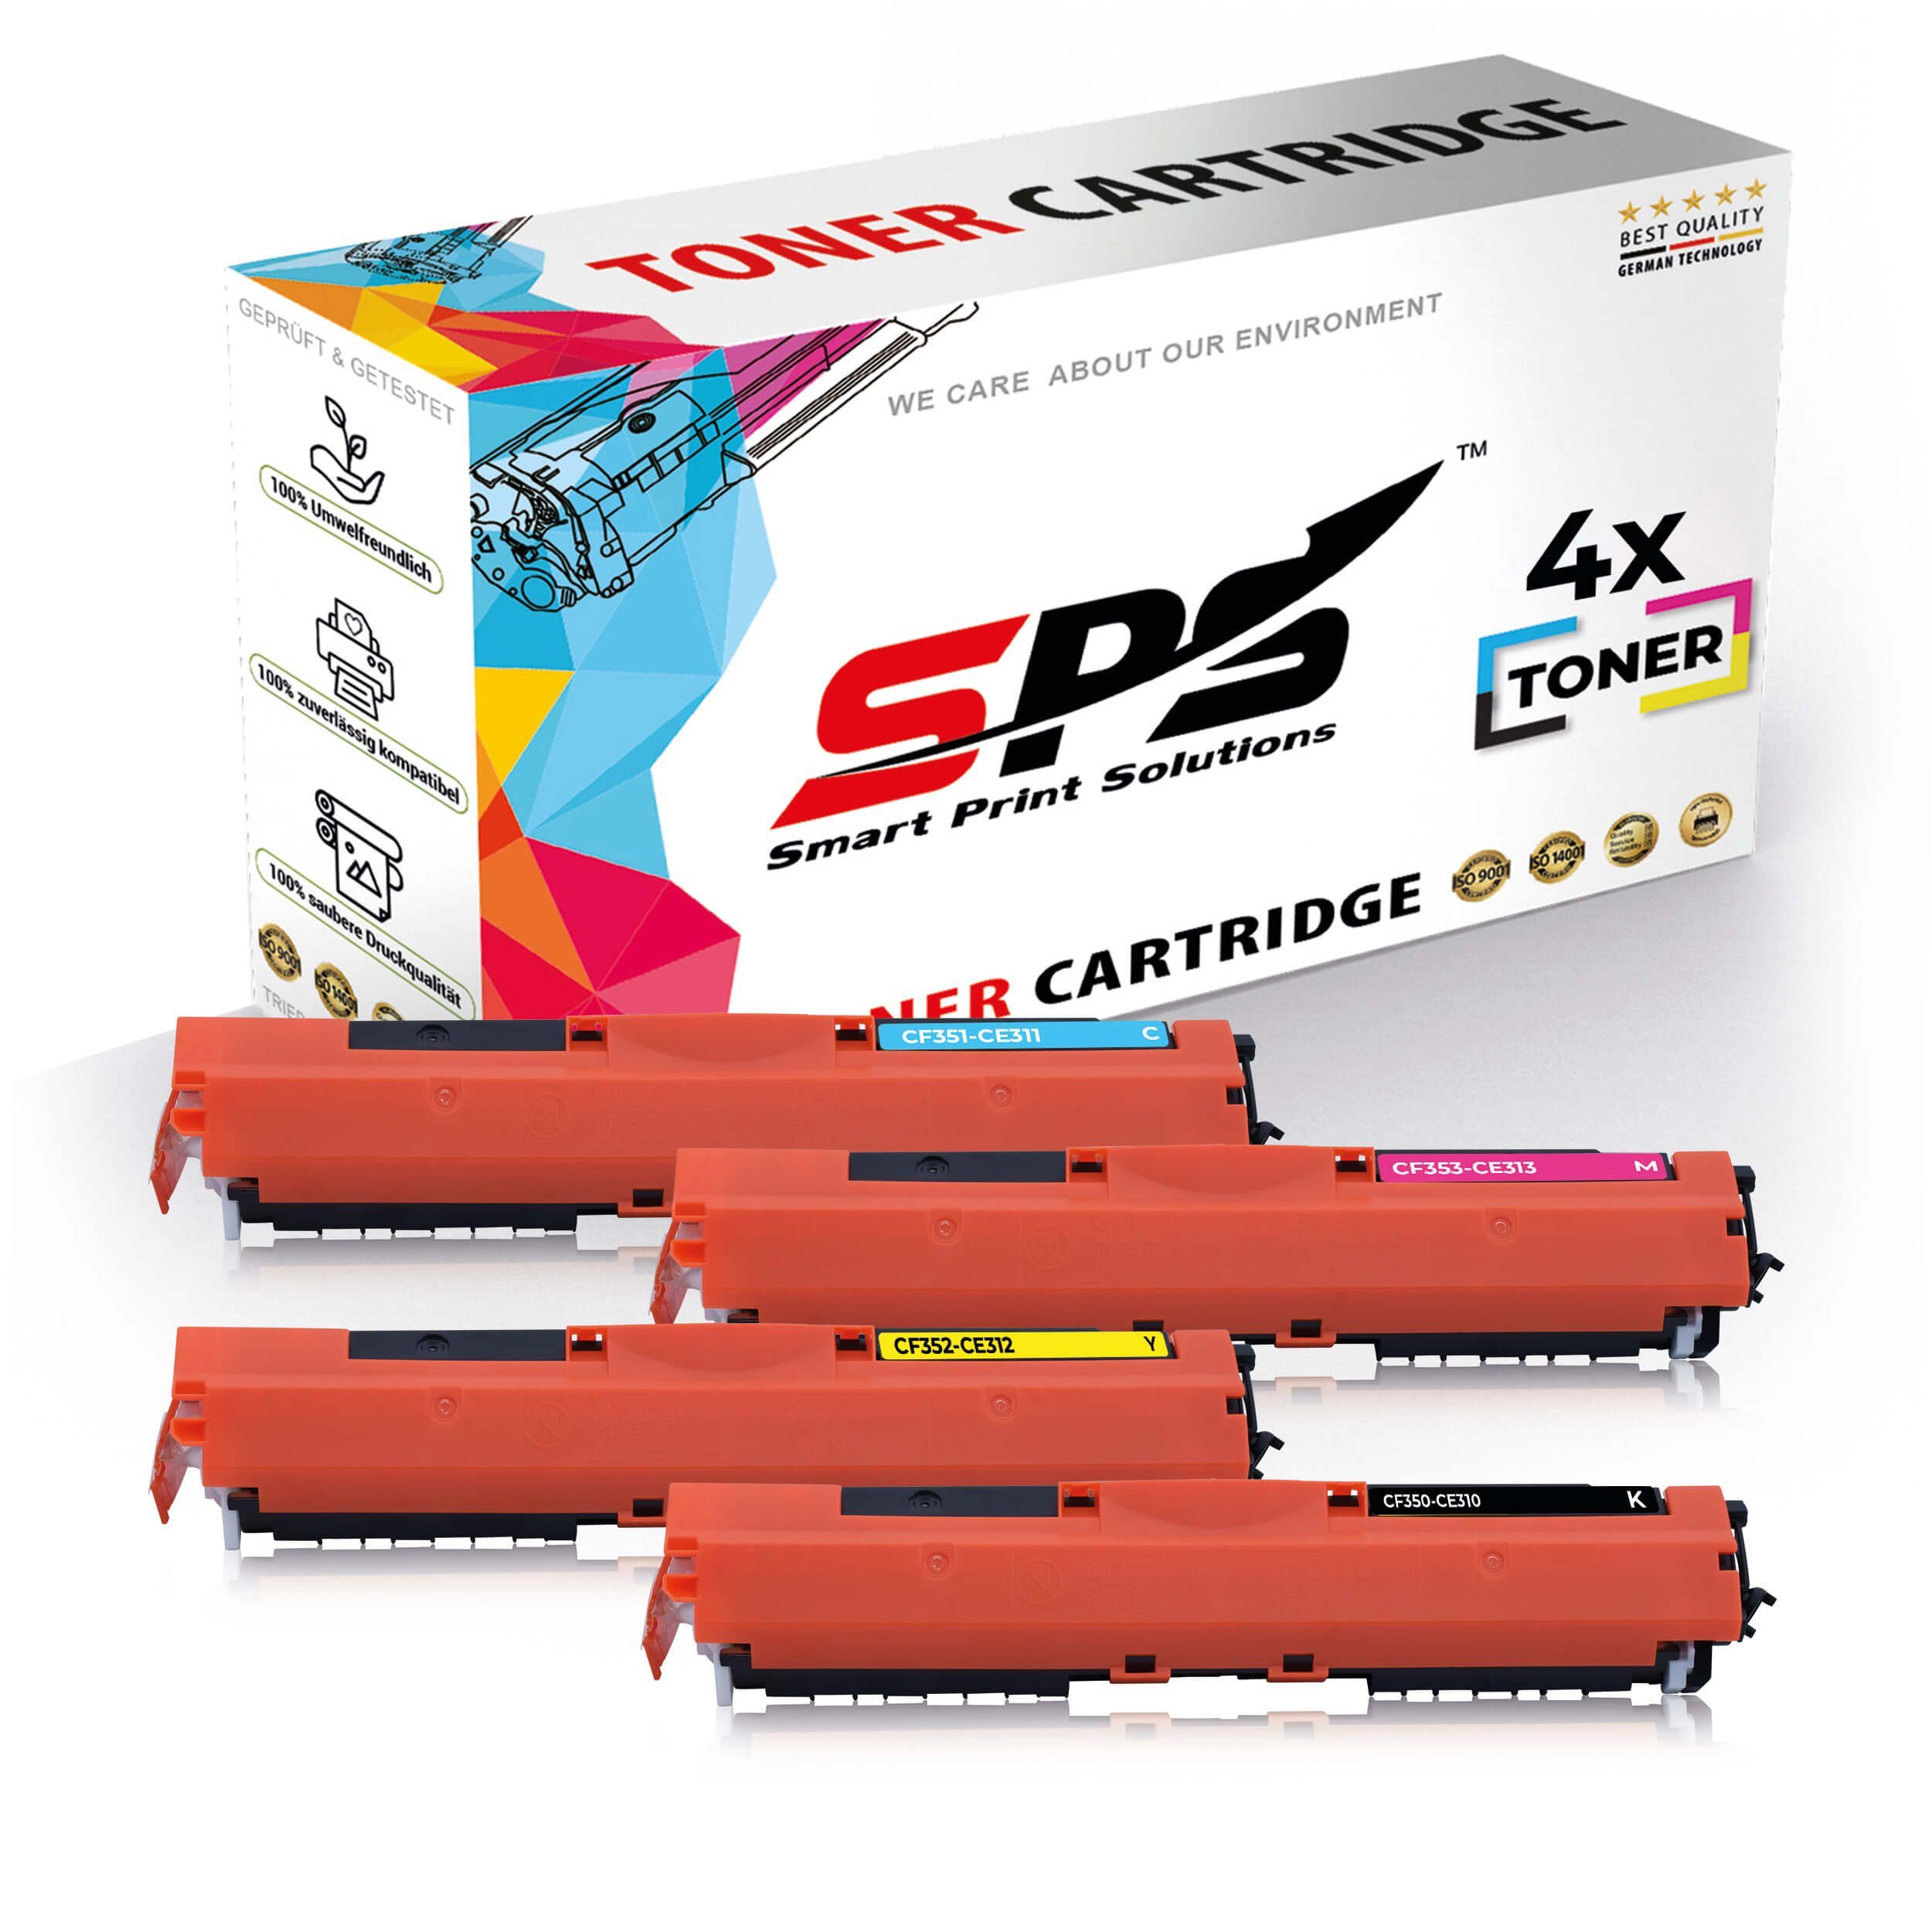 SPS Tonerkartusche 4x Multipack Set Kompatibel für HP Color LaserJet, (4er Pack, 4x Toner)